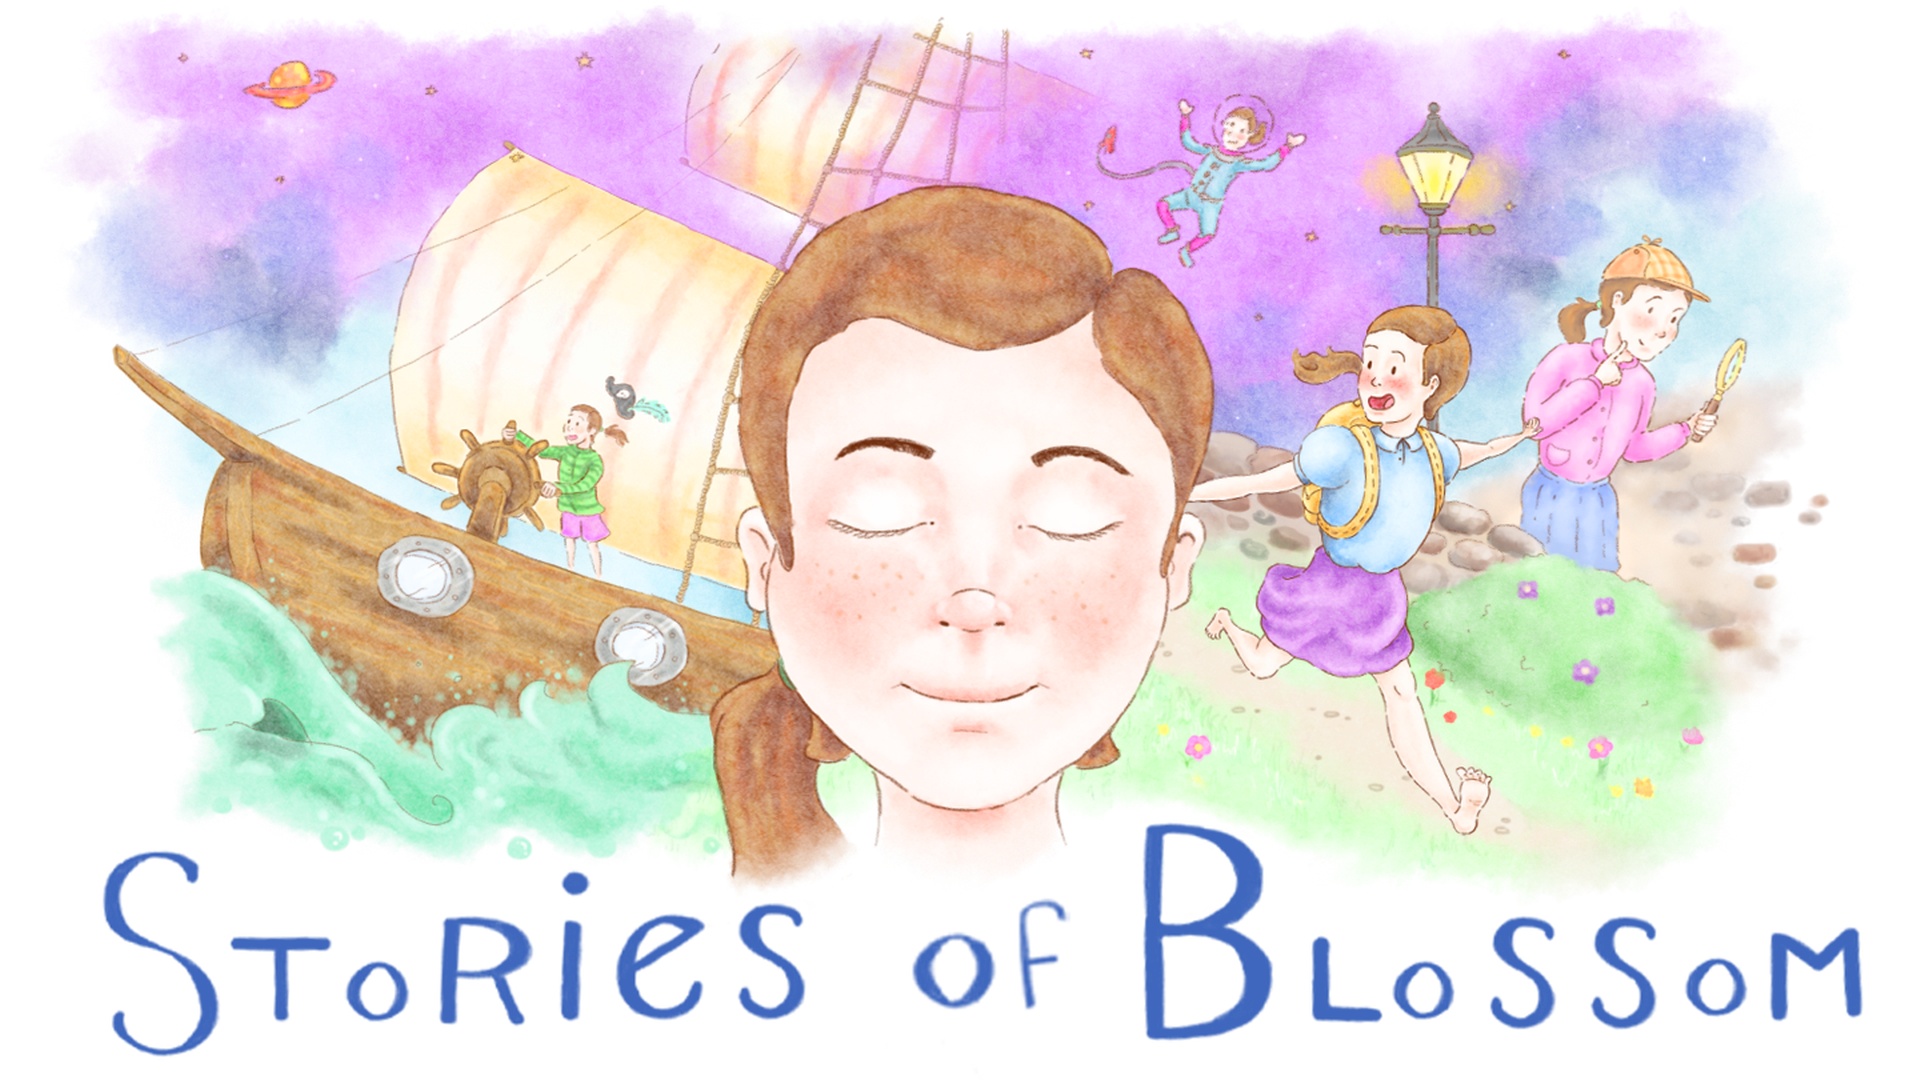 Auf dem Titelbild von Stories of Blossom ist ein Mädchen mit geschlossenen Augen zu sehen, das sich verschiedene Geschichten ausdenkt: Links befindet sie sich auf einem Piratenschiff, darüber schwebt sie im Weltraum, daneben läuft sie einen Hügel hinunter, gefolgt von einer Szene neben einer Straßenlaterne, in der Sie eine Lupe zu halten scheint.